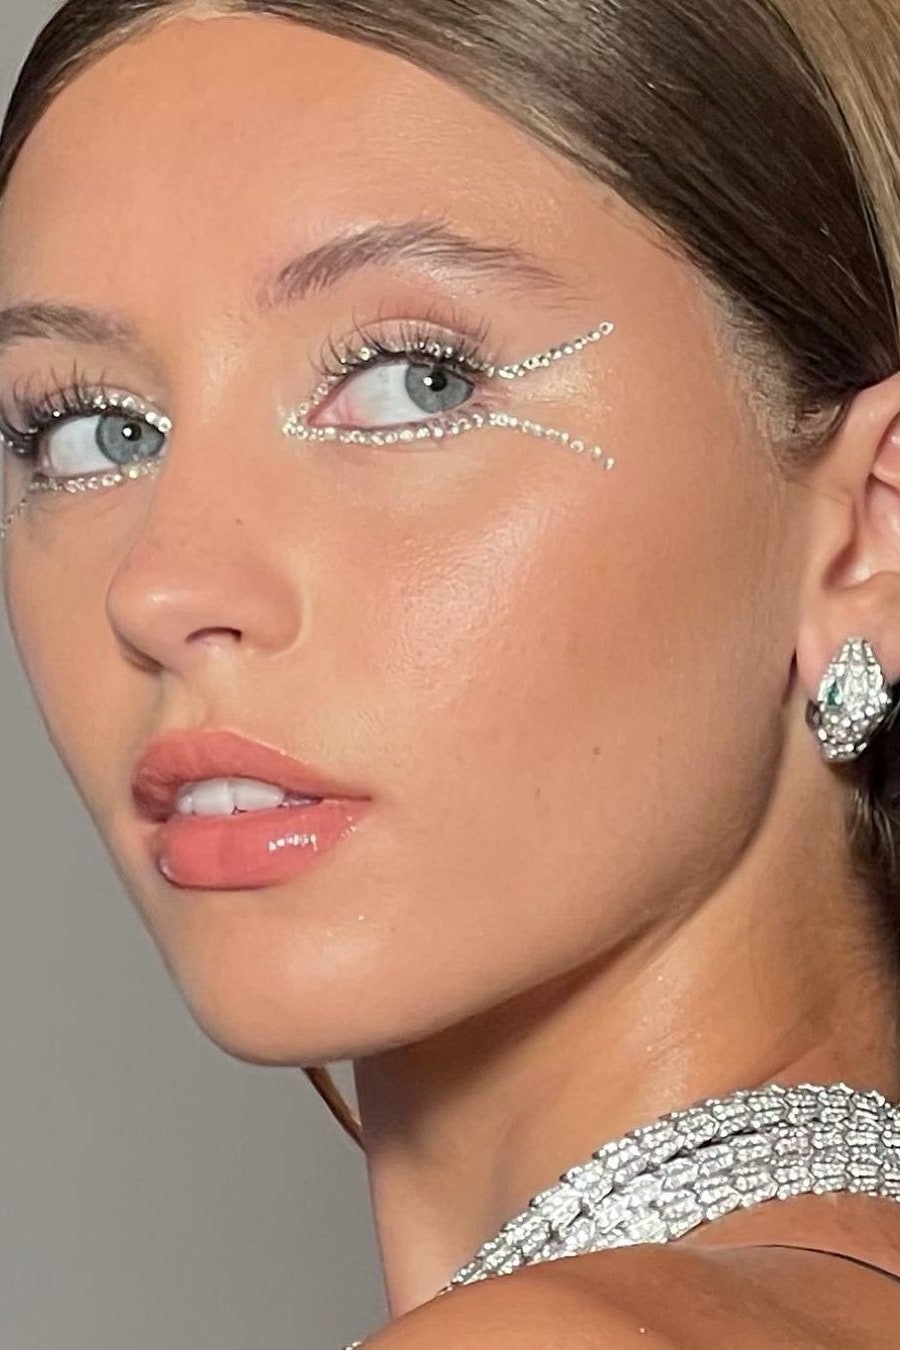 Saiba quais tendências de maquiagem podem bombar em 2022 segundo profissionais (Foto: Instagram/ @annesophiecosta)